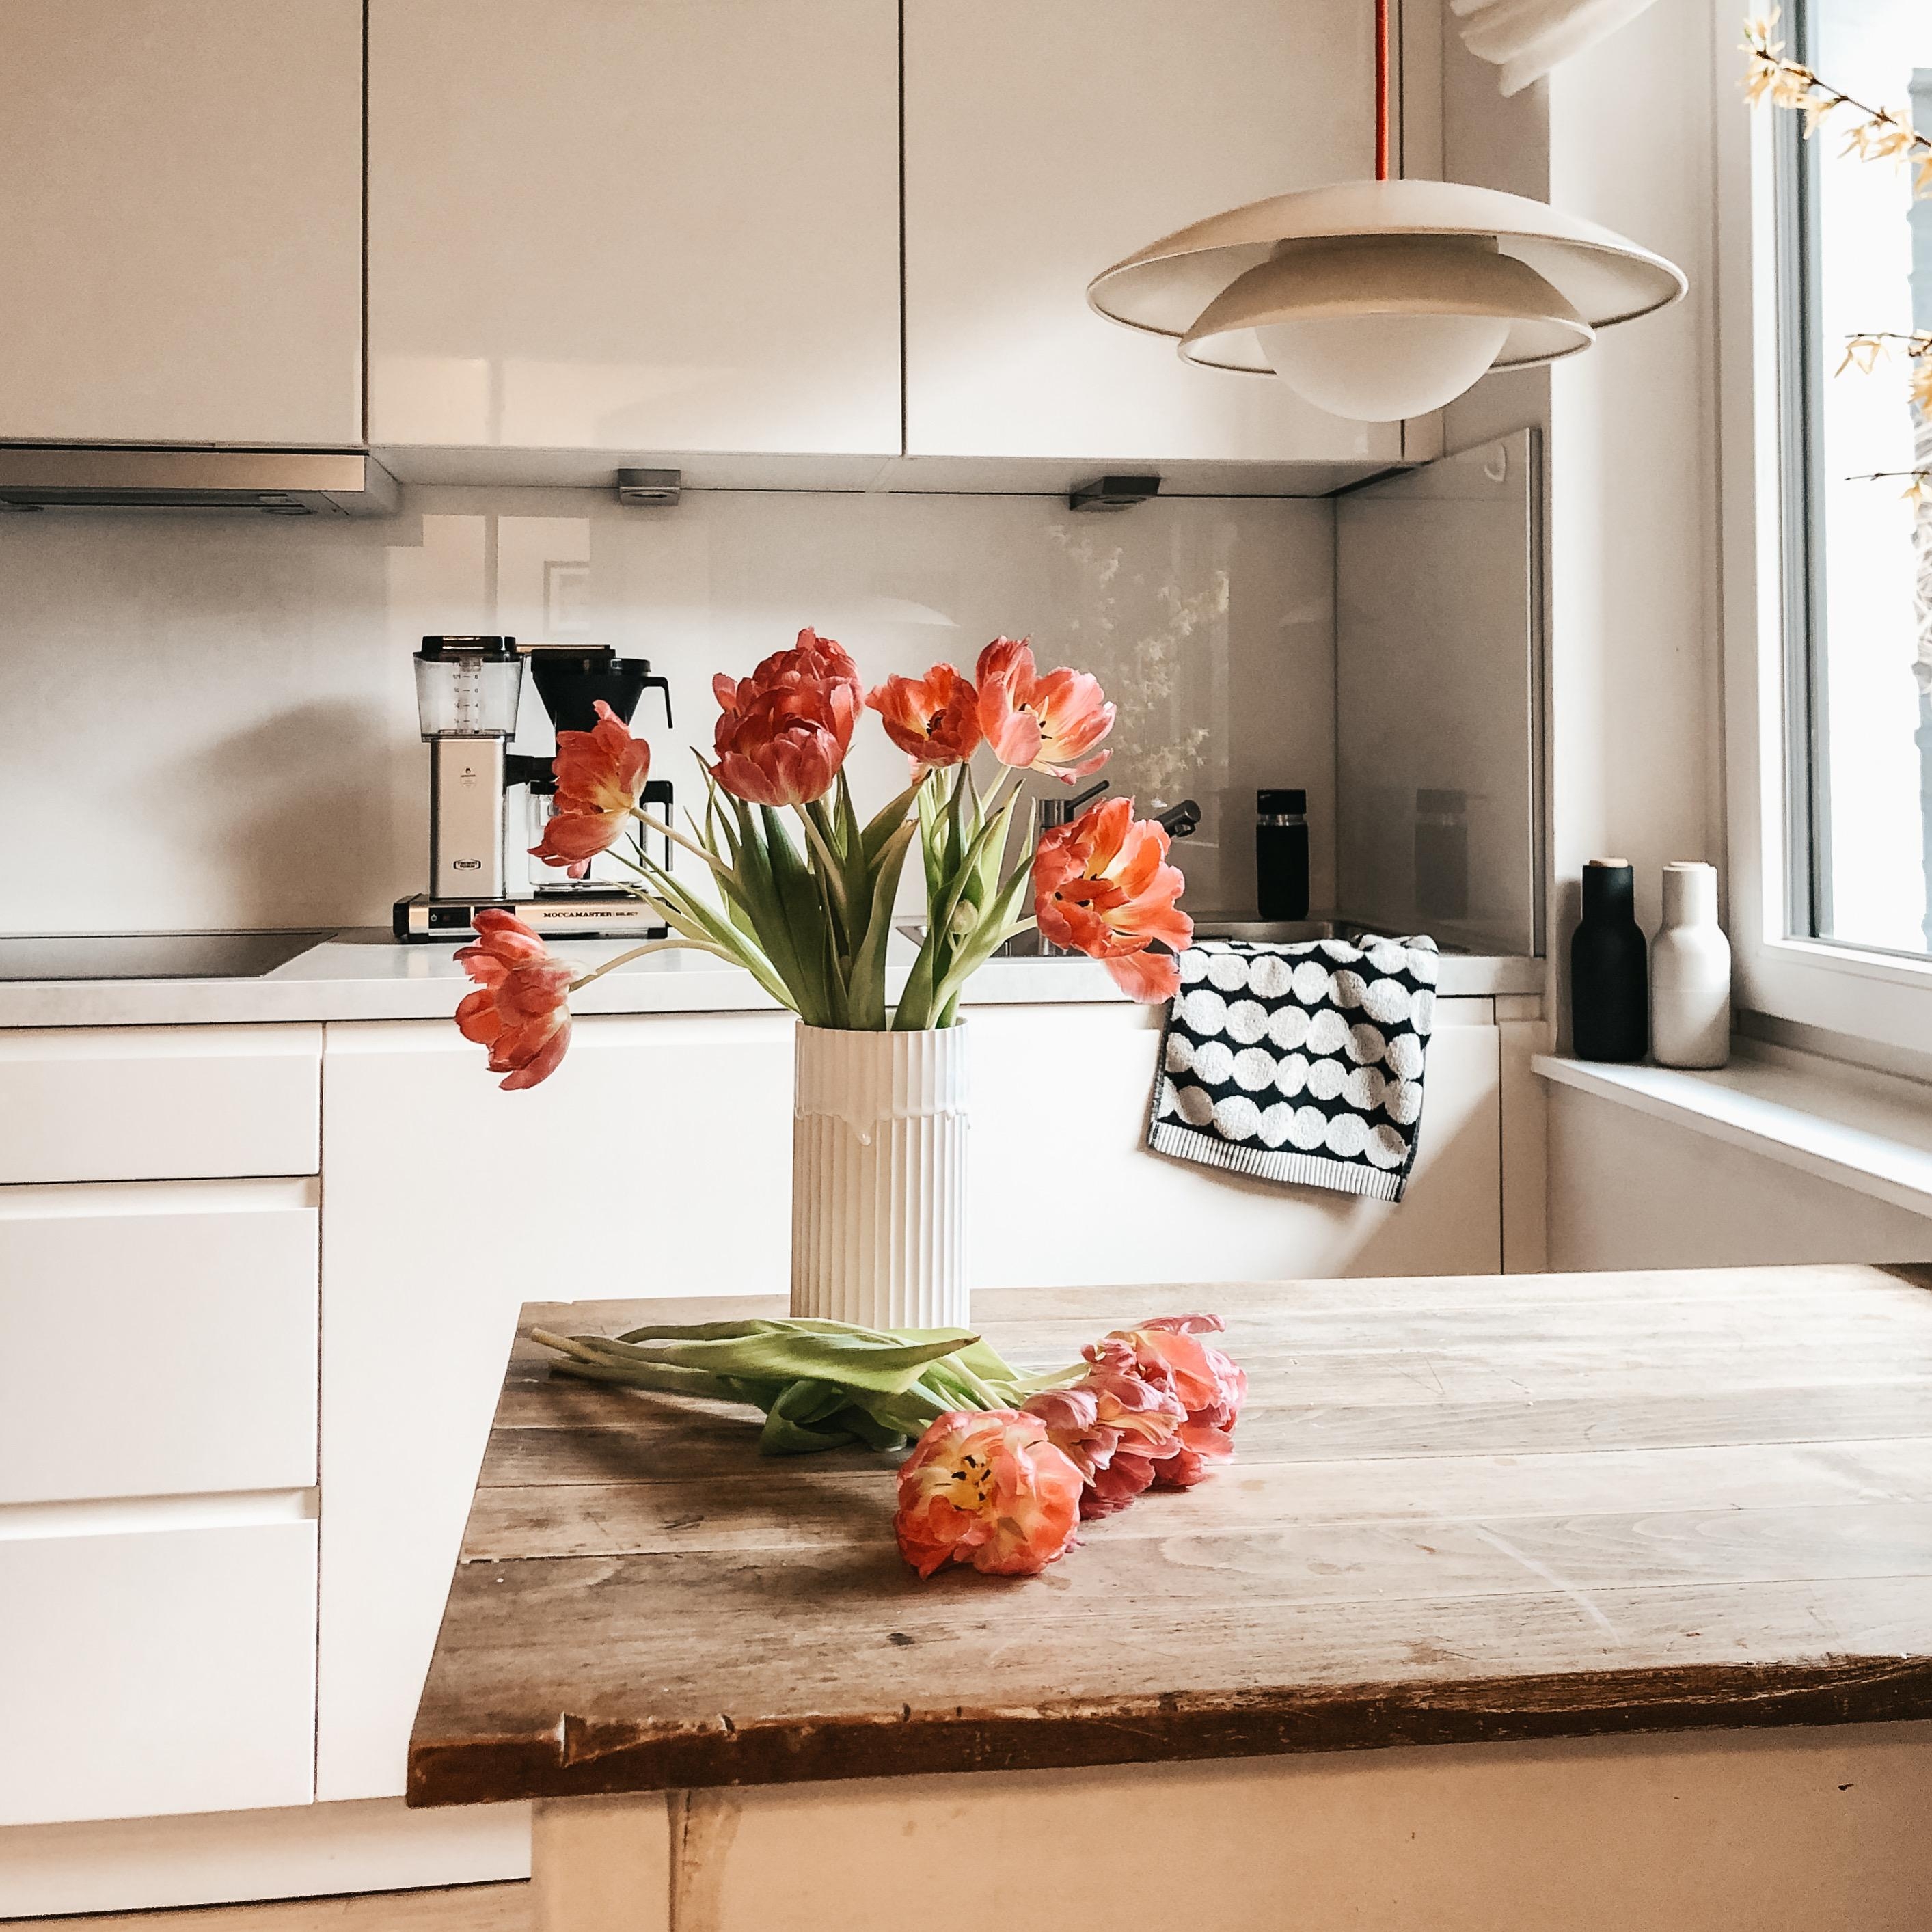 Kitchenstories
#küche #tulpenliebe #whiteliving